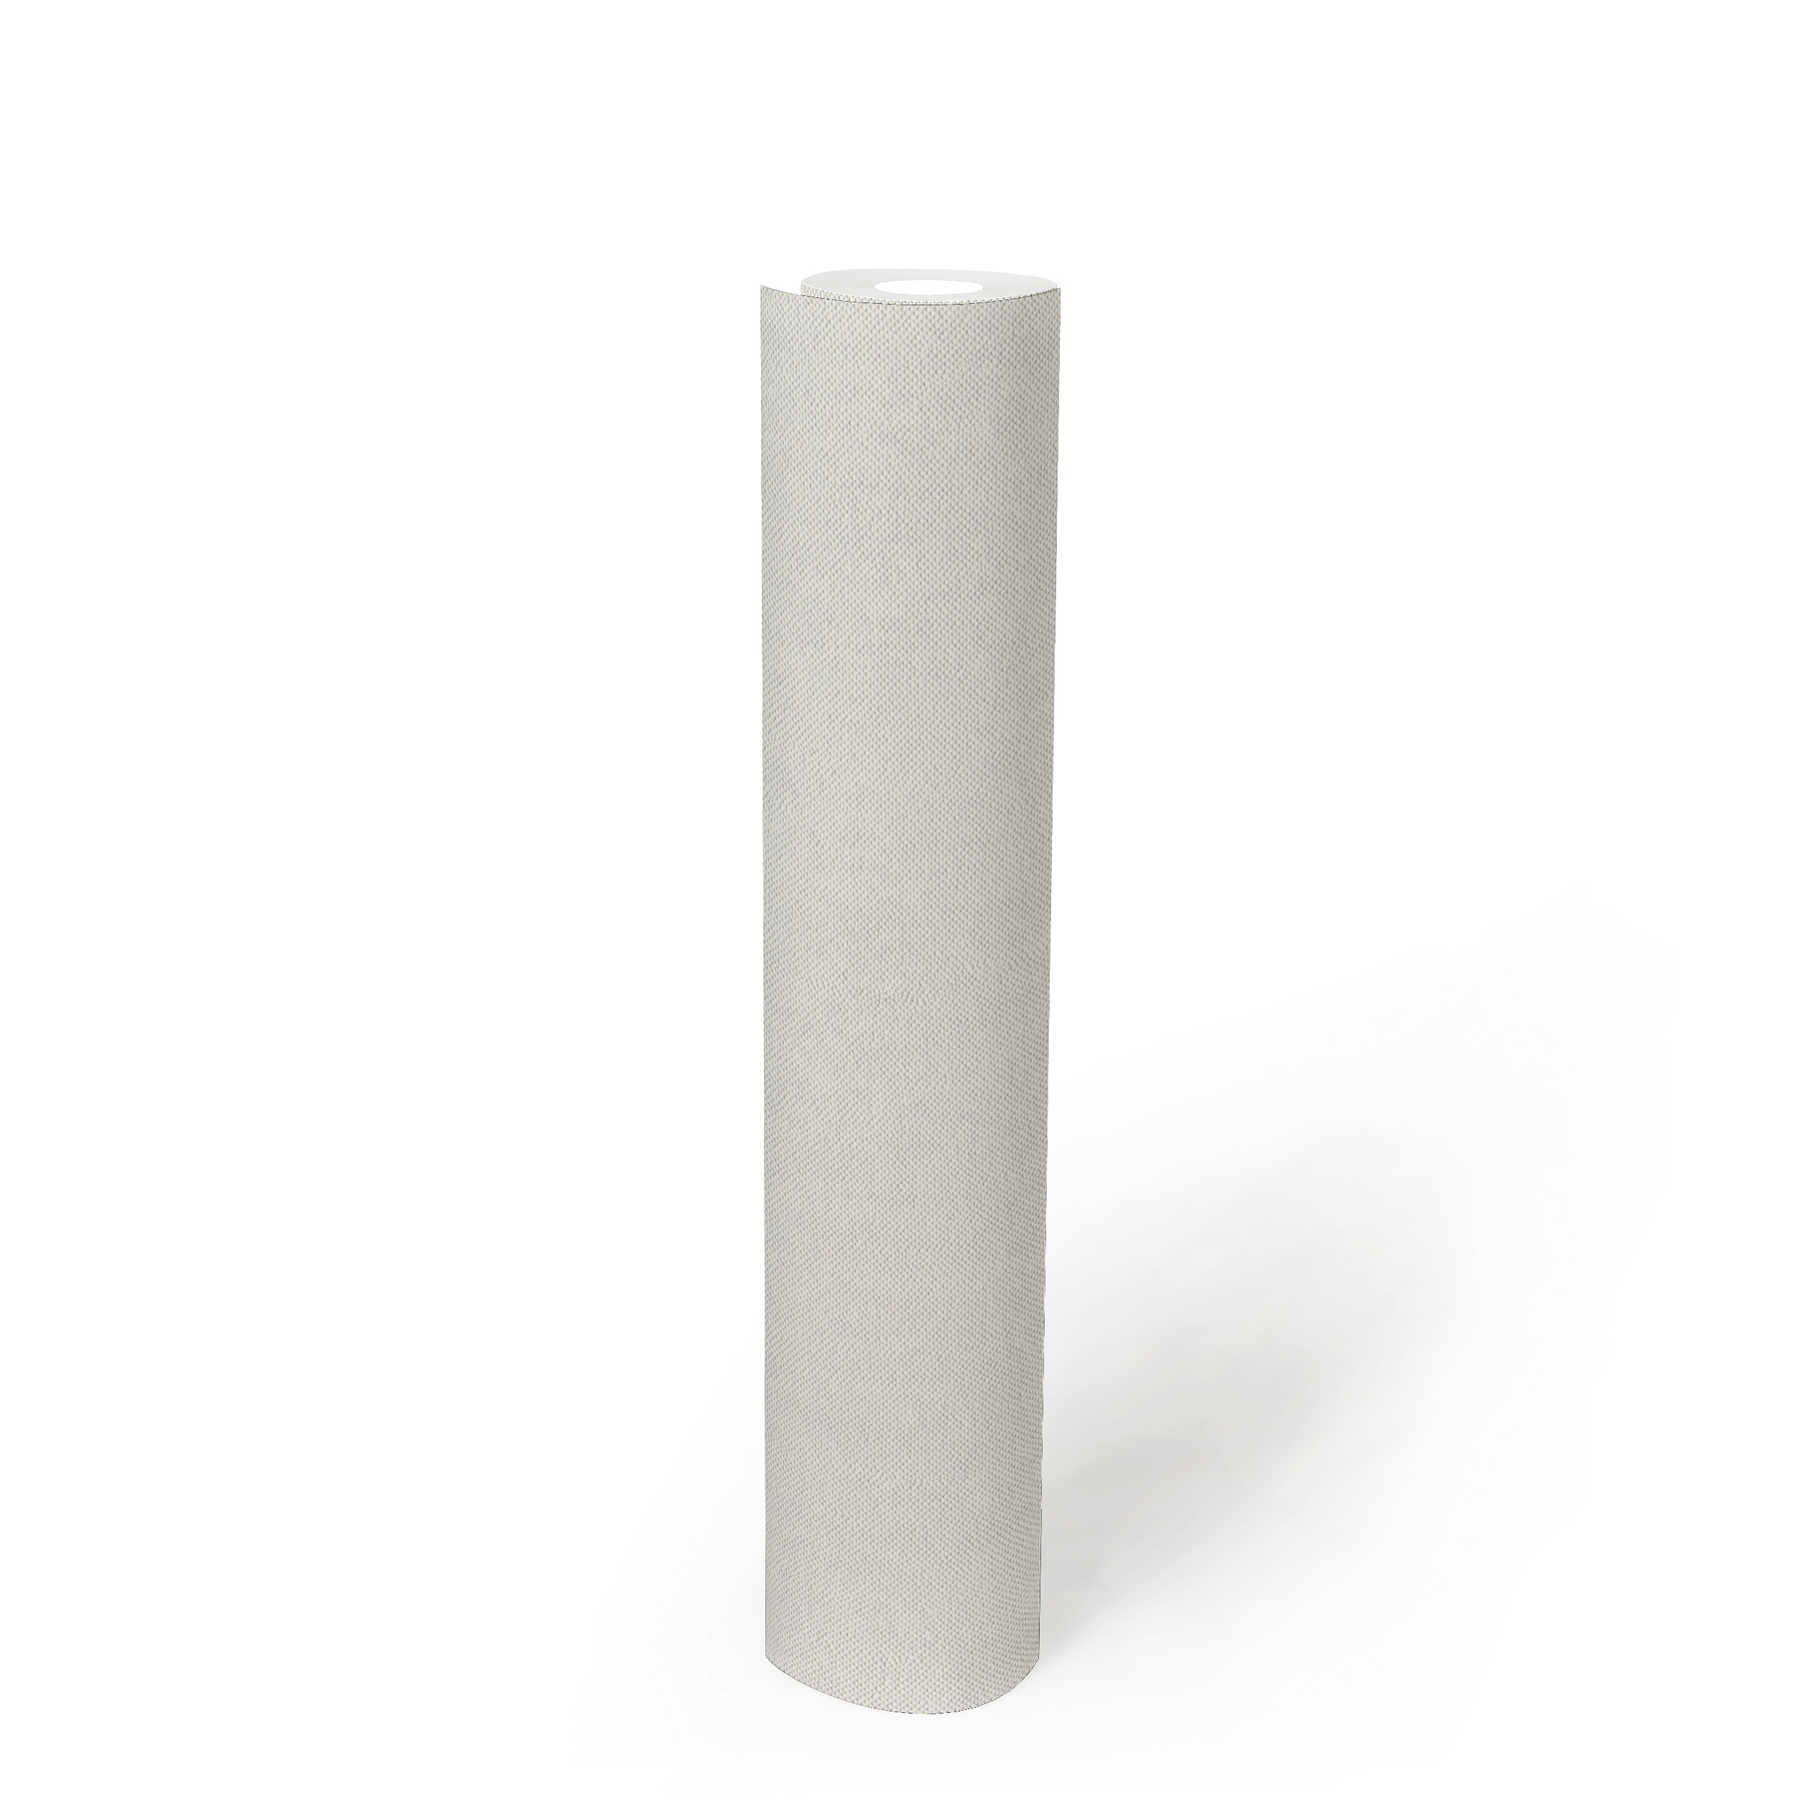             Papier peint blanc avec structure textile, uni & mat
        